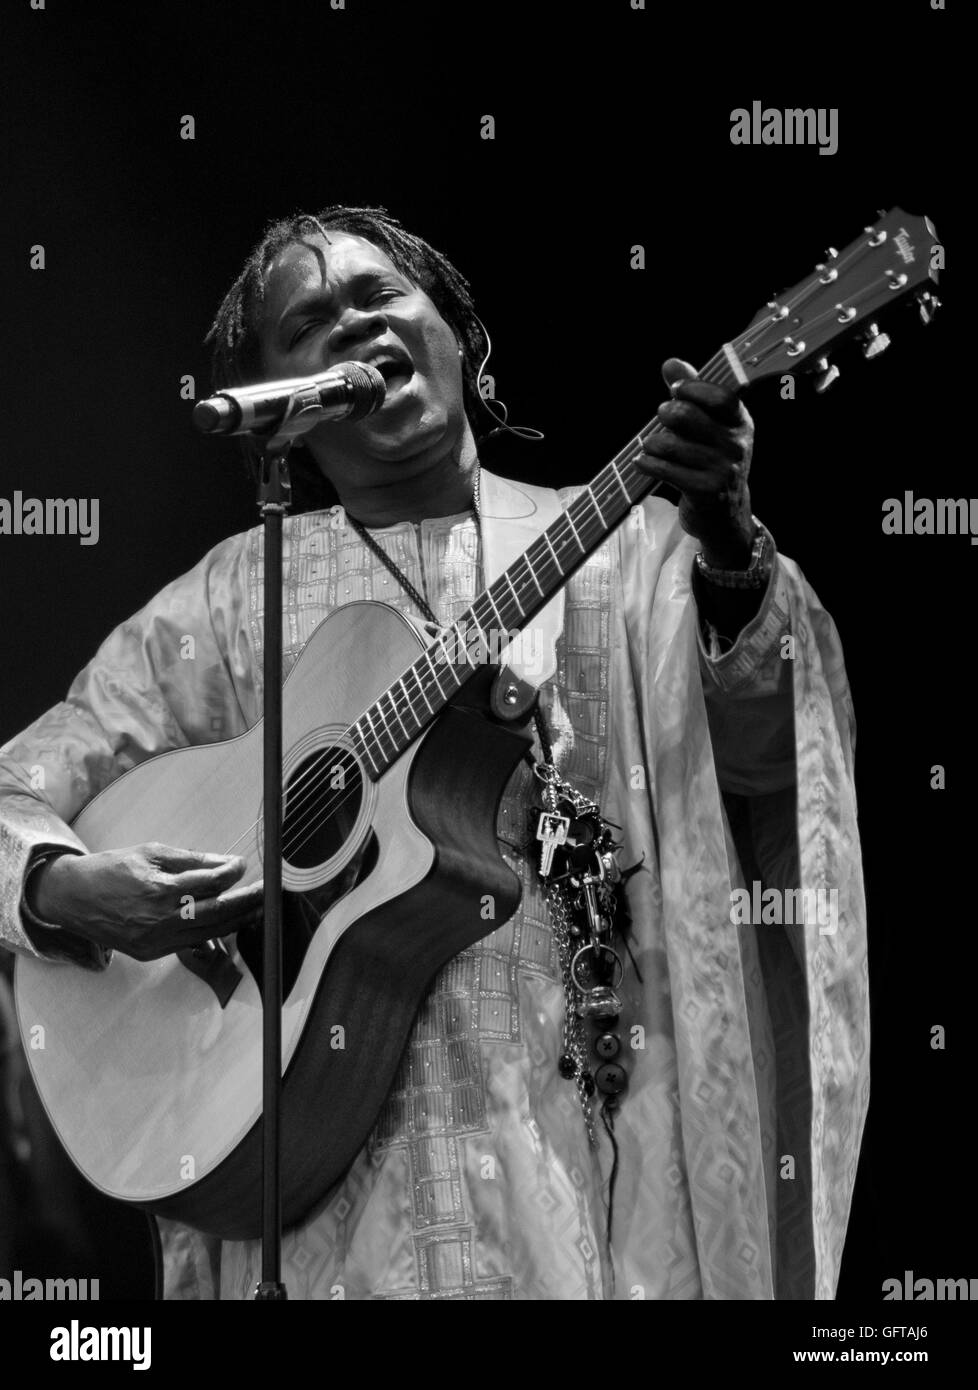 Musicien légendaire Baaba Mal du Sénégal à jouer au monde 2016 WOMAD Arts de musique et dance festival à Charlton Park. Le Wiltshire. L'Angleterre. UK Banque D'Images